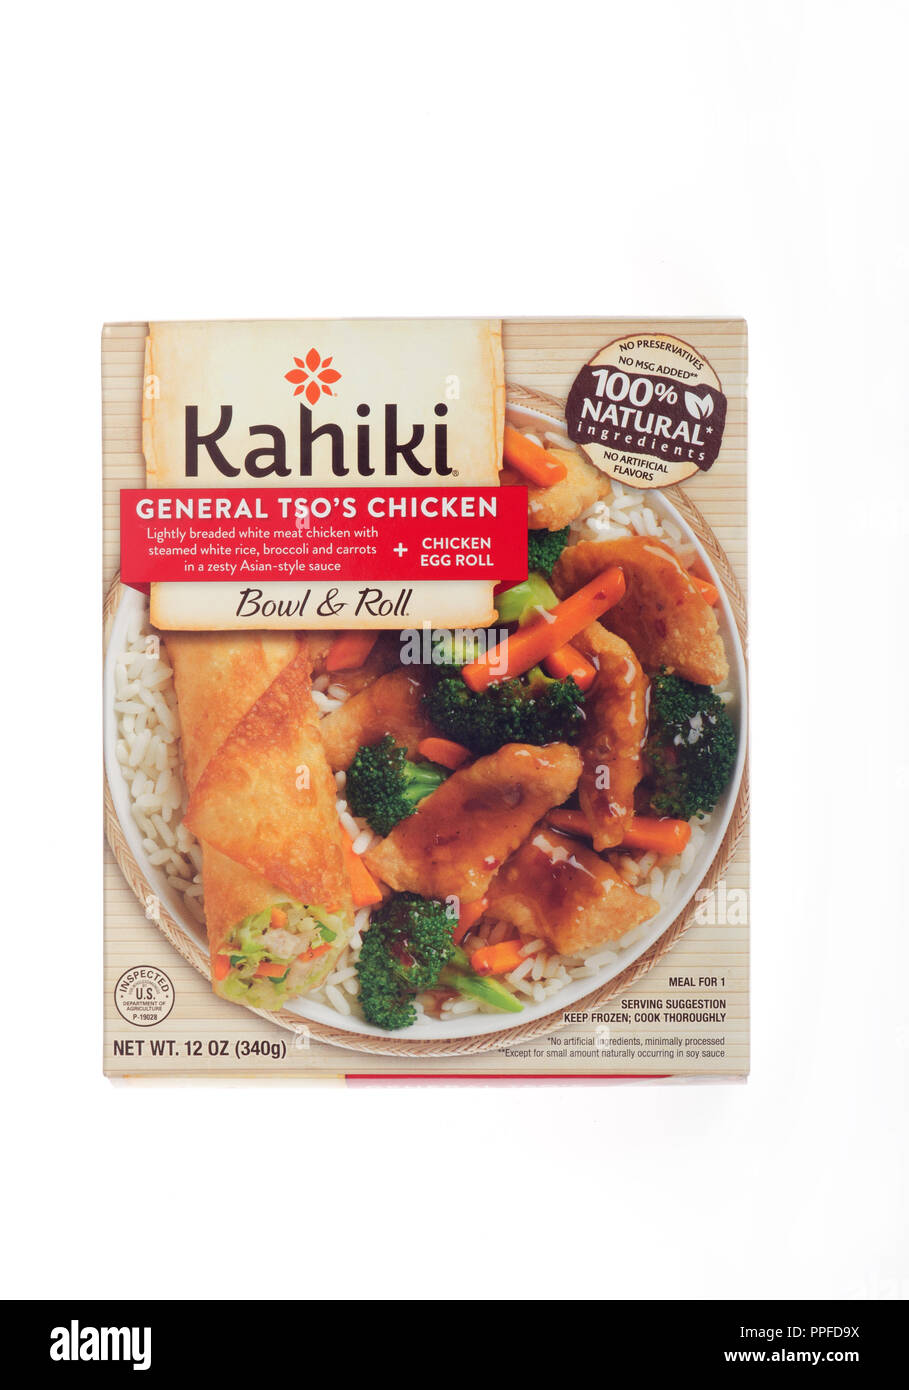 Scatola di congelati Kahiki generale del Tso pollo con riso, carote, broccoli e un rotolo di uova in una ciotola Foto Stock